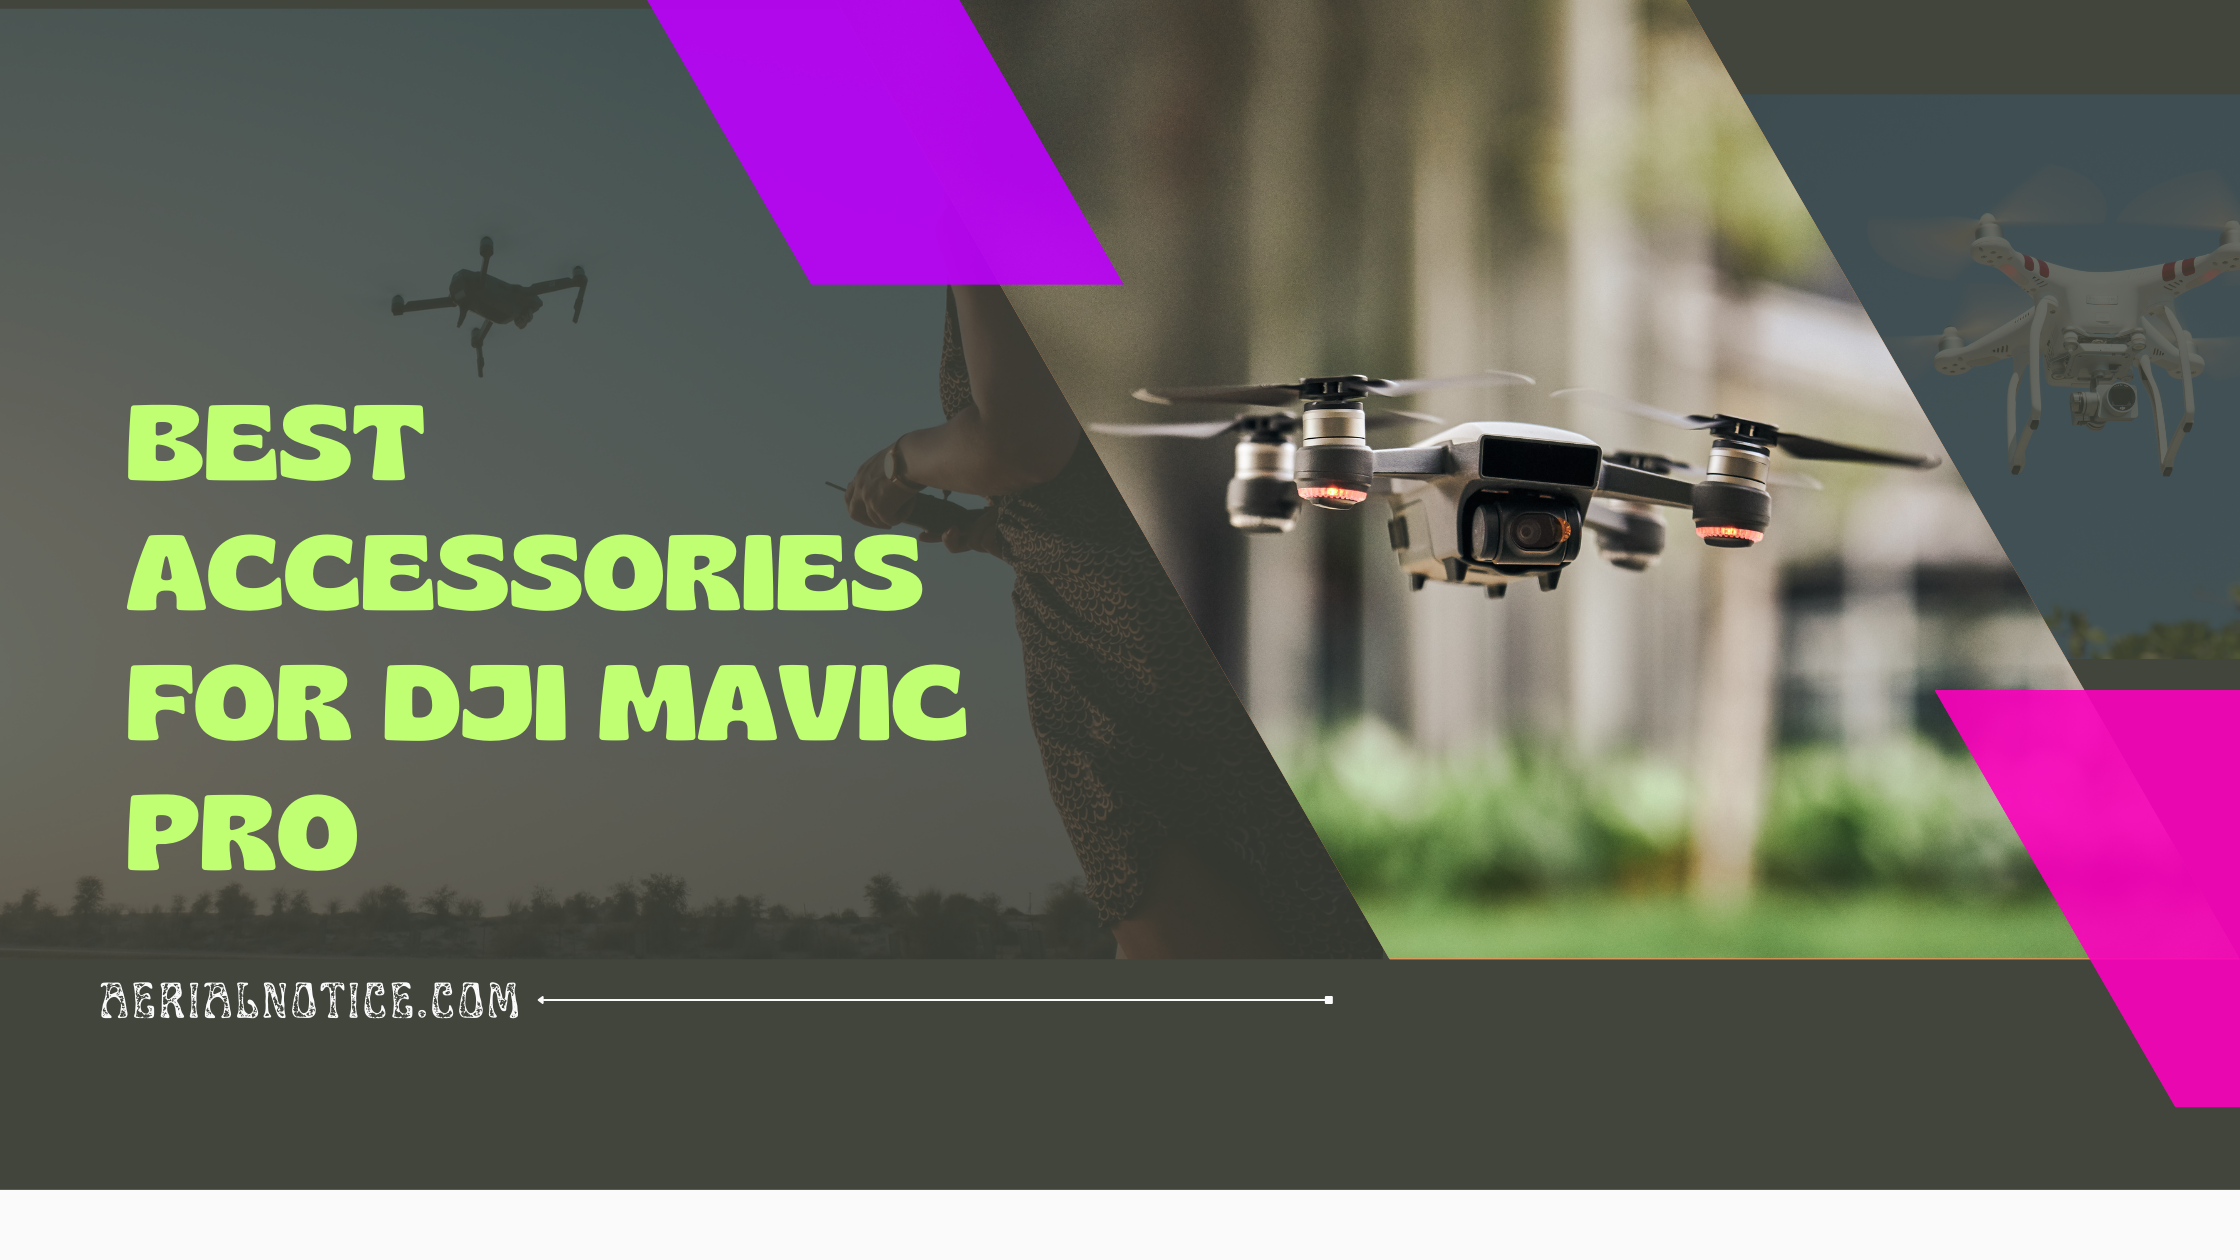 Accessories for DJI Mavic Pro